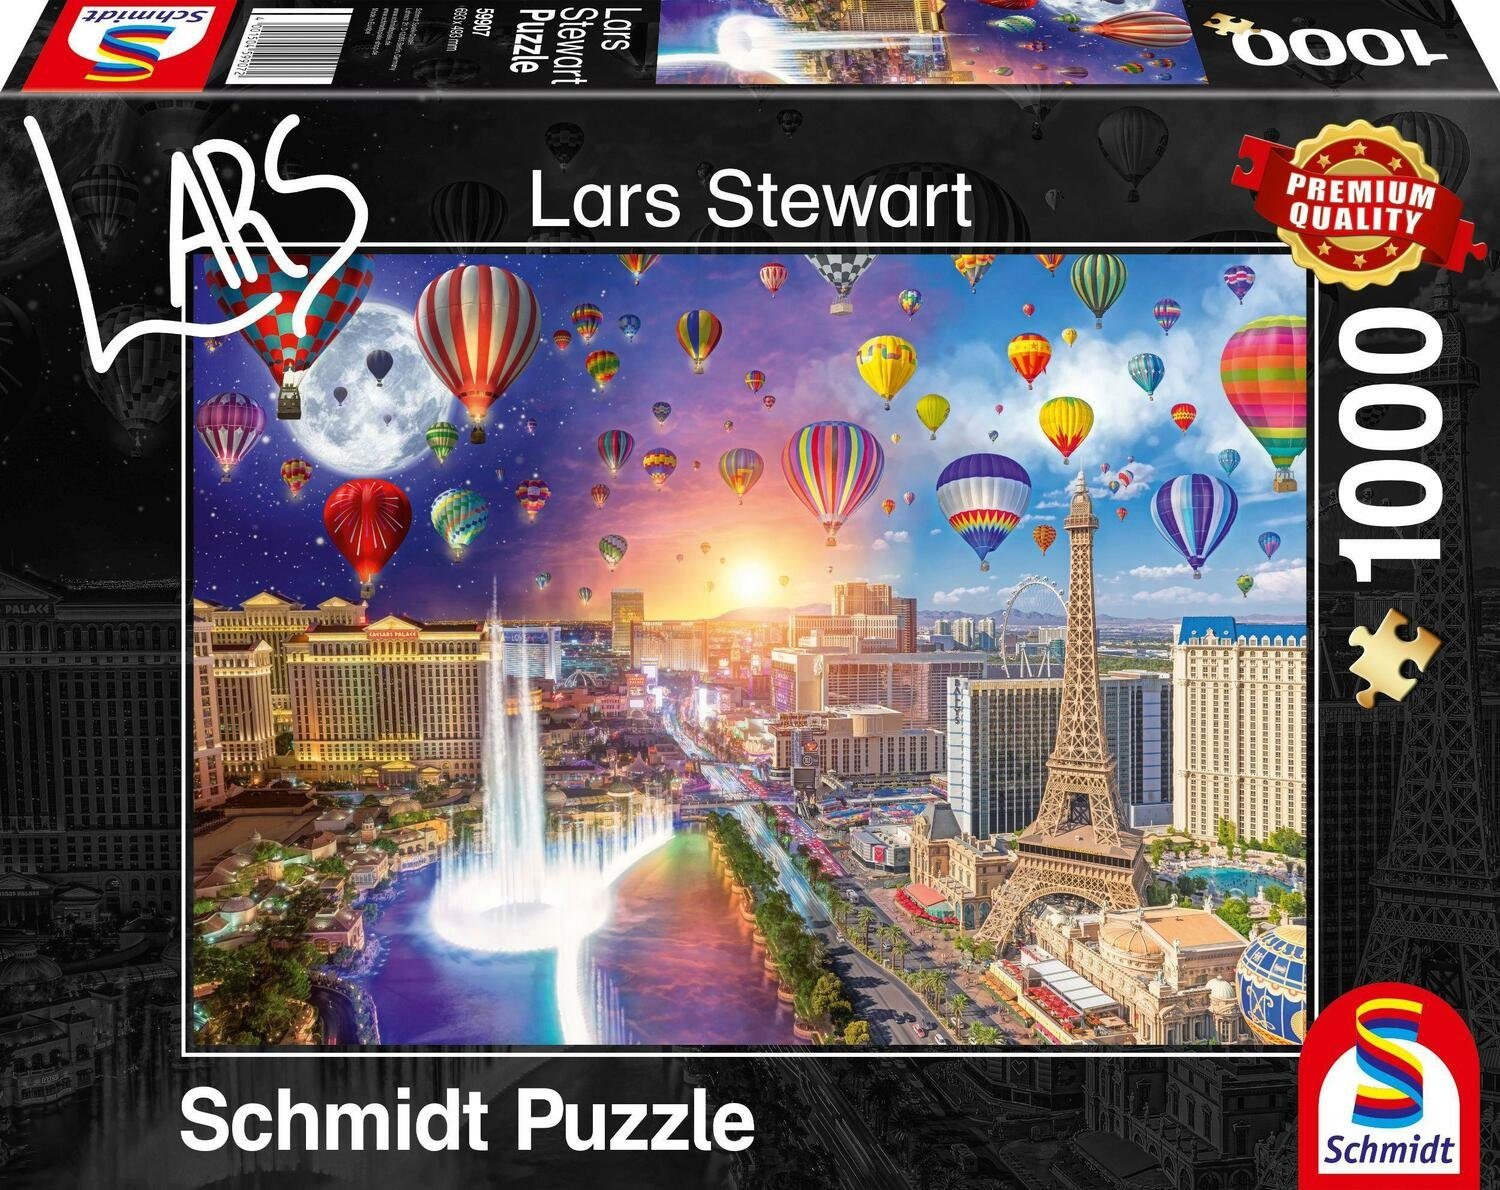 Schmidt Spiele Puzzle Las Vegas, Night and Day Puzzle 1.000 Teile, 1000 Puzzleteile